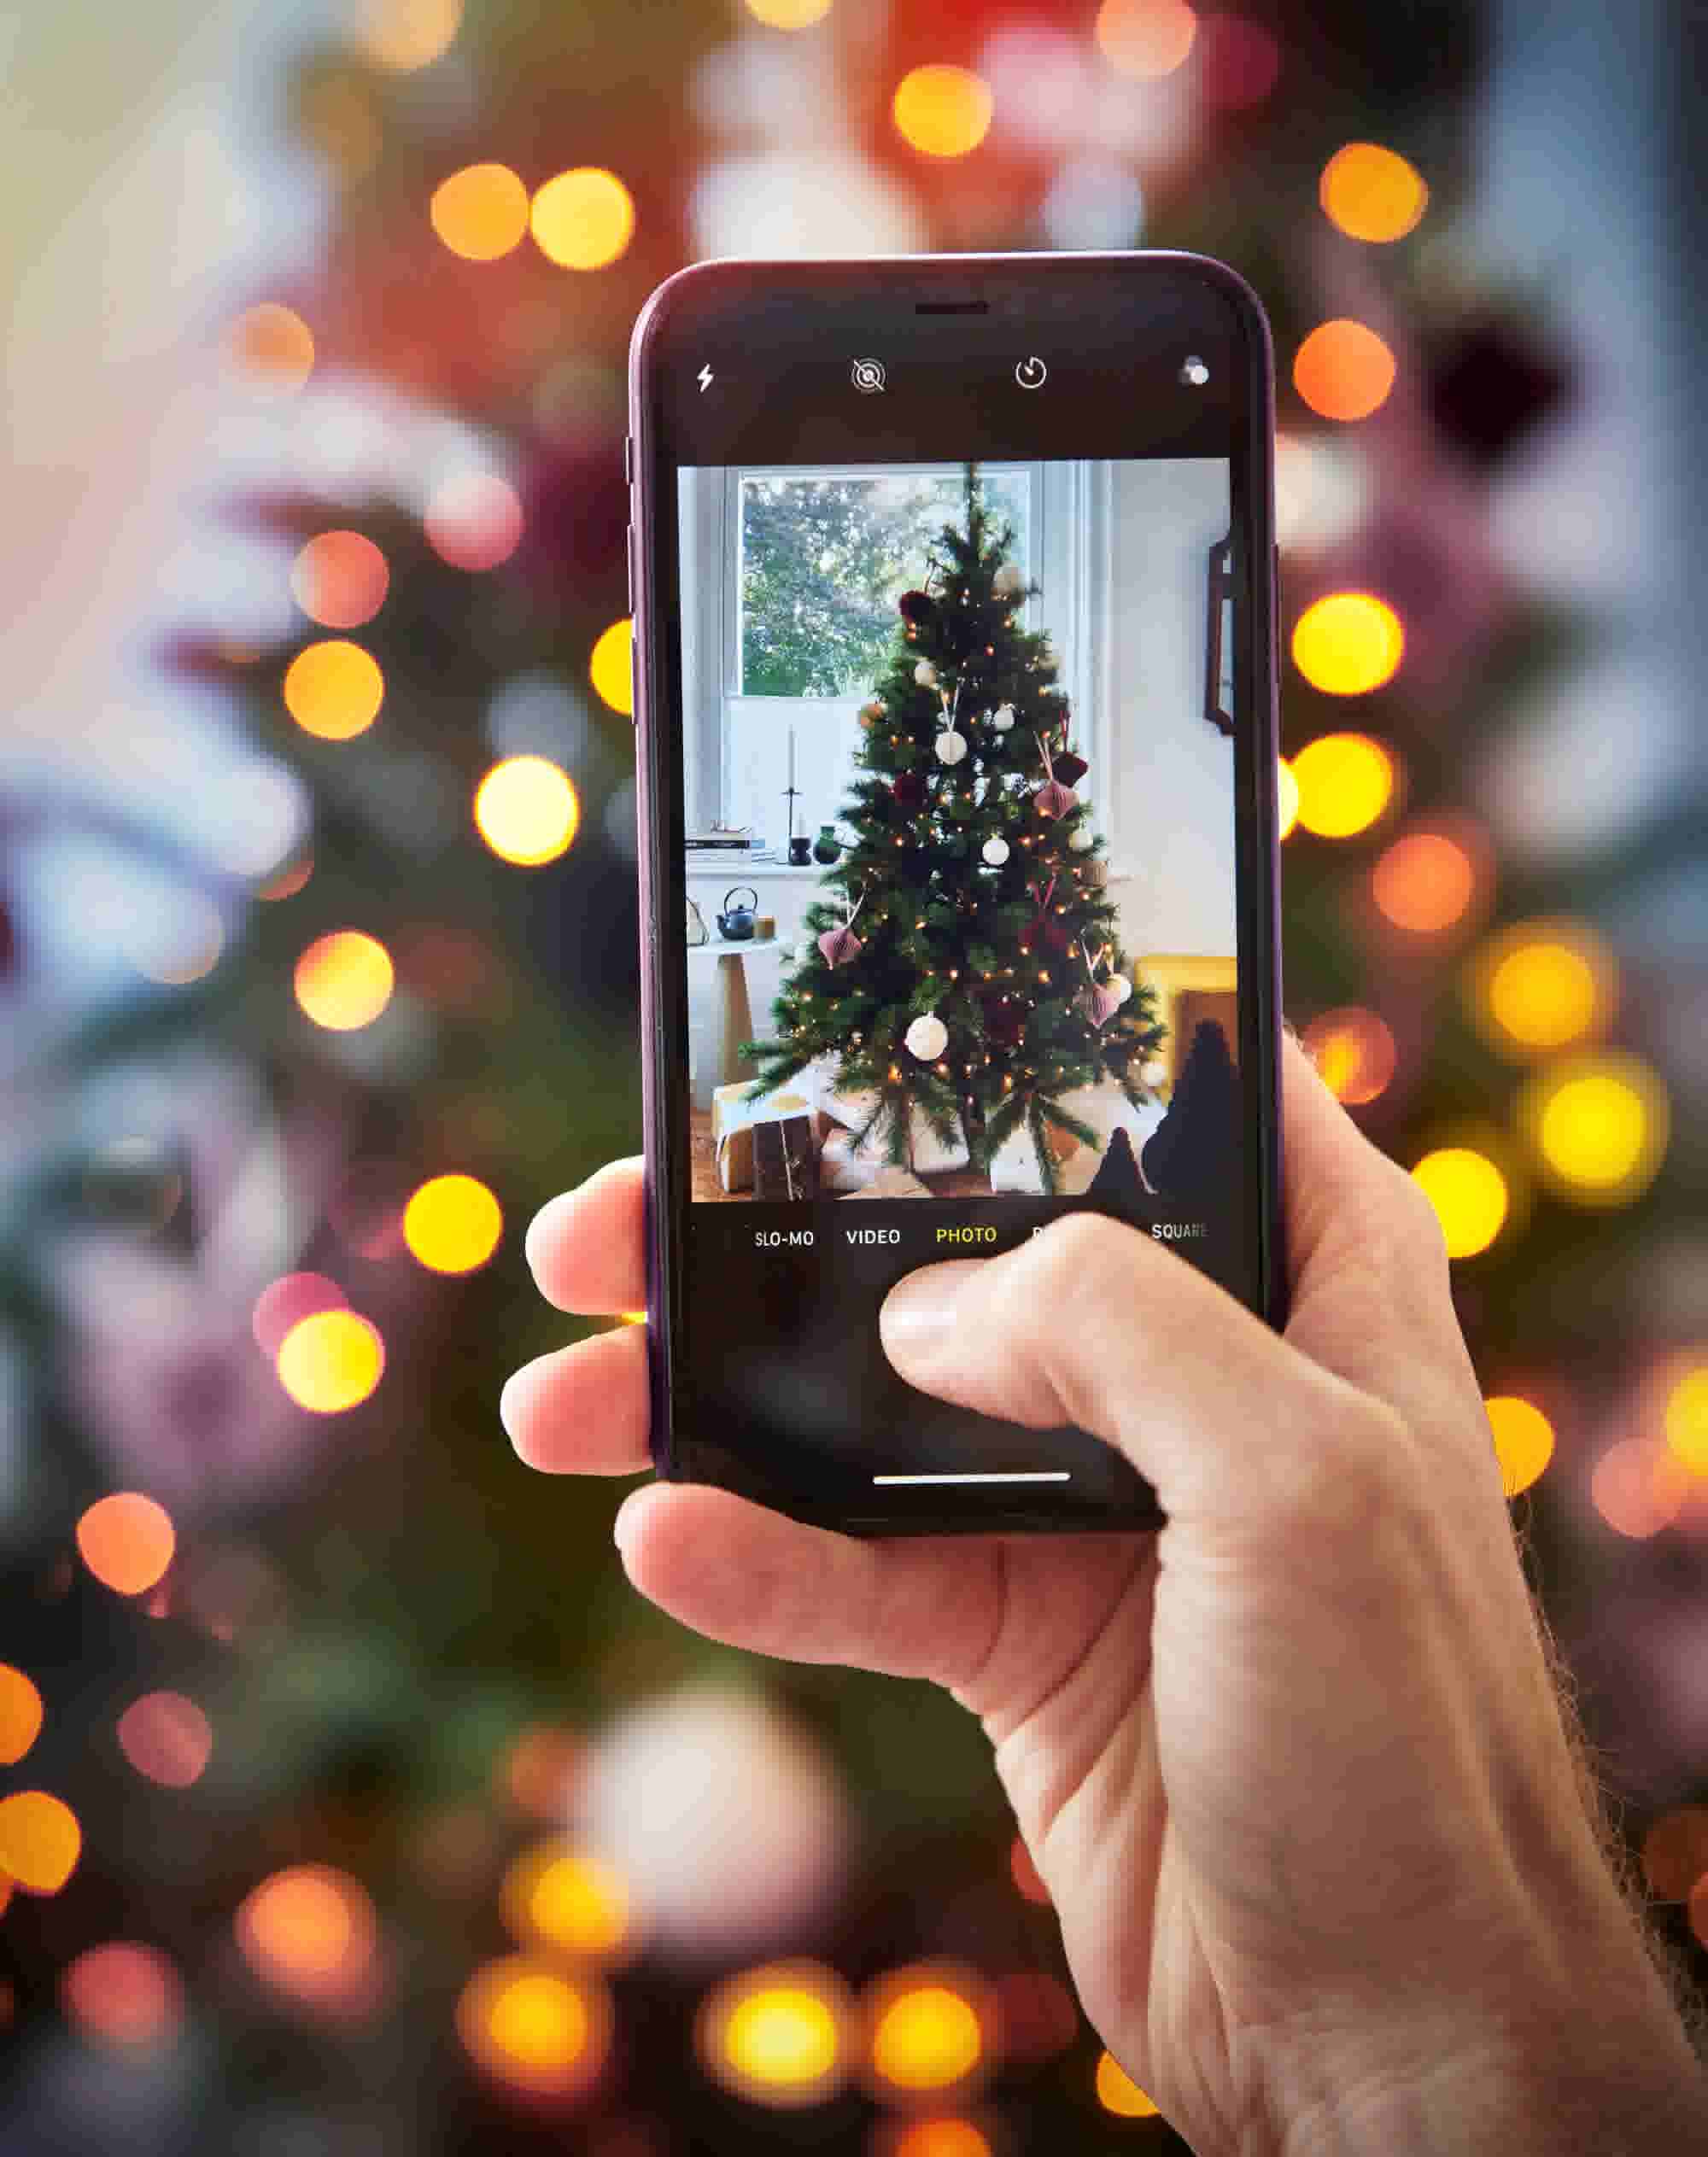 kerstfoto maken: tips voor het perfecte plaatje | Karwei